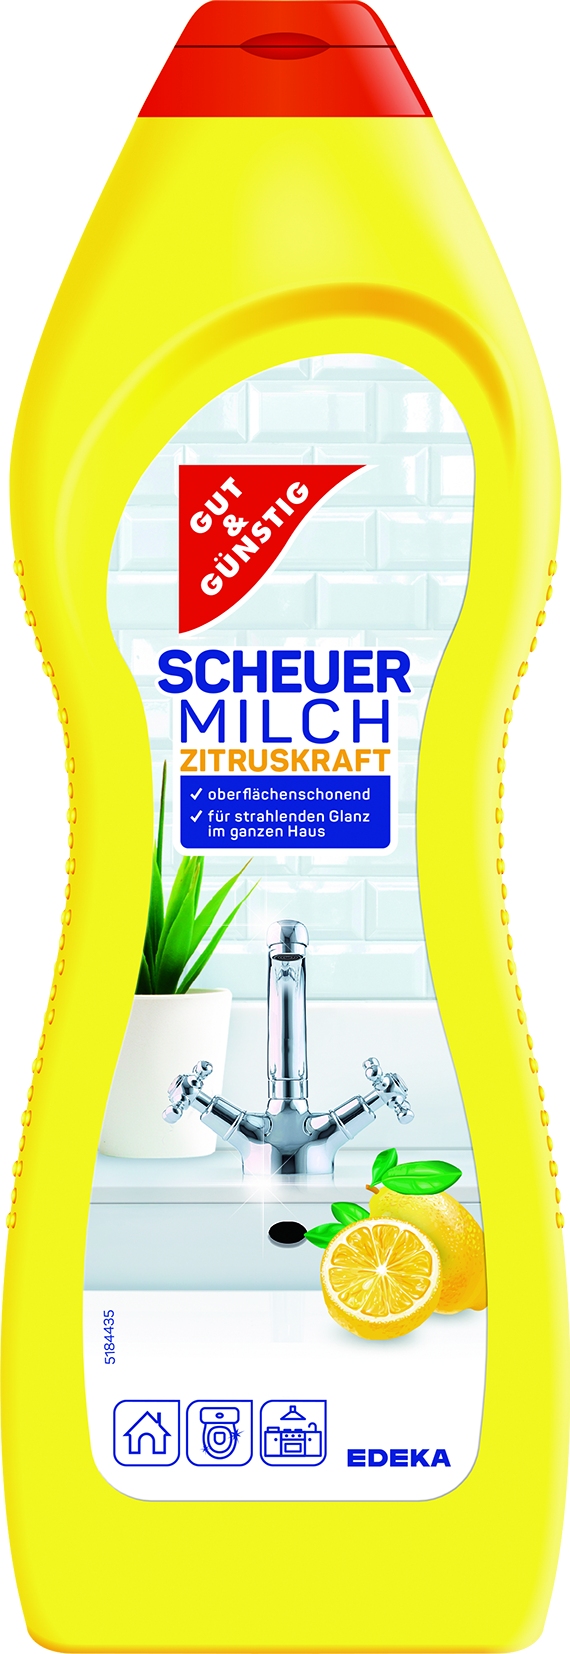 Scheuermilch   